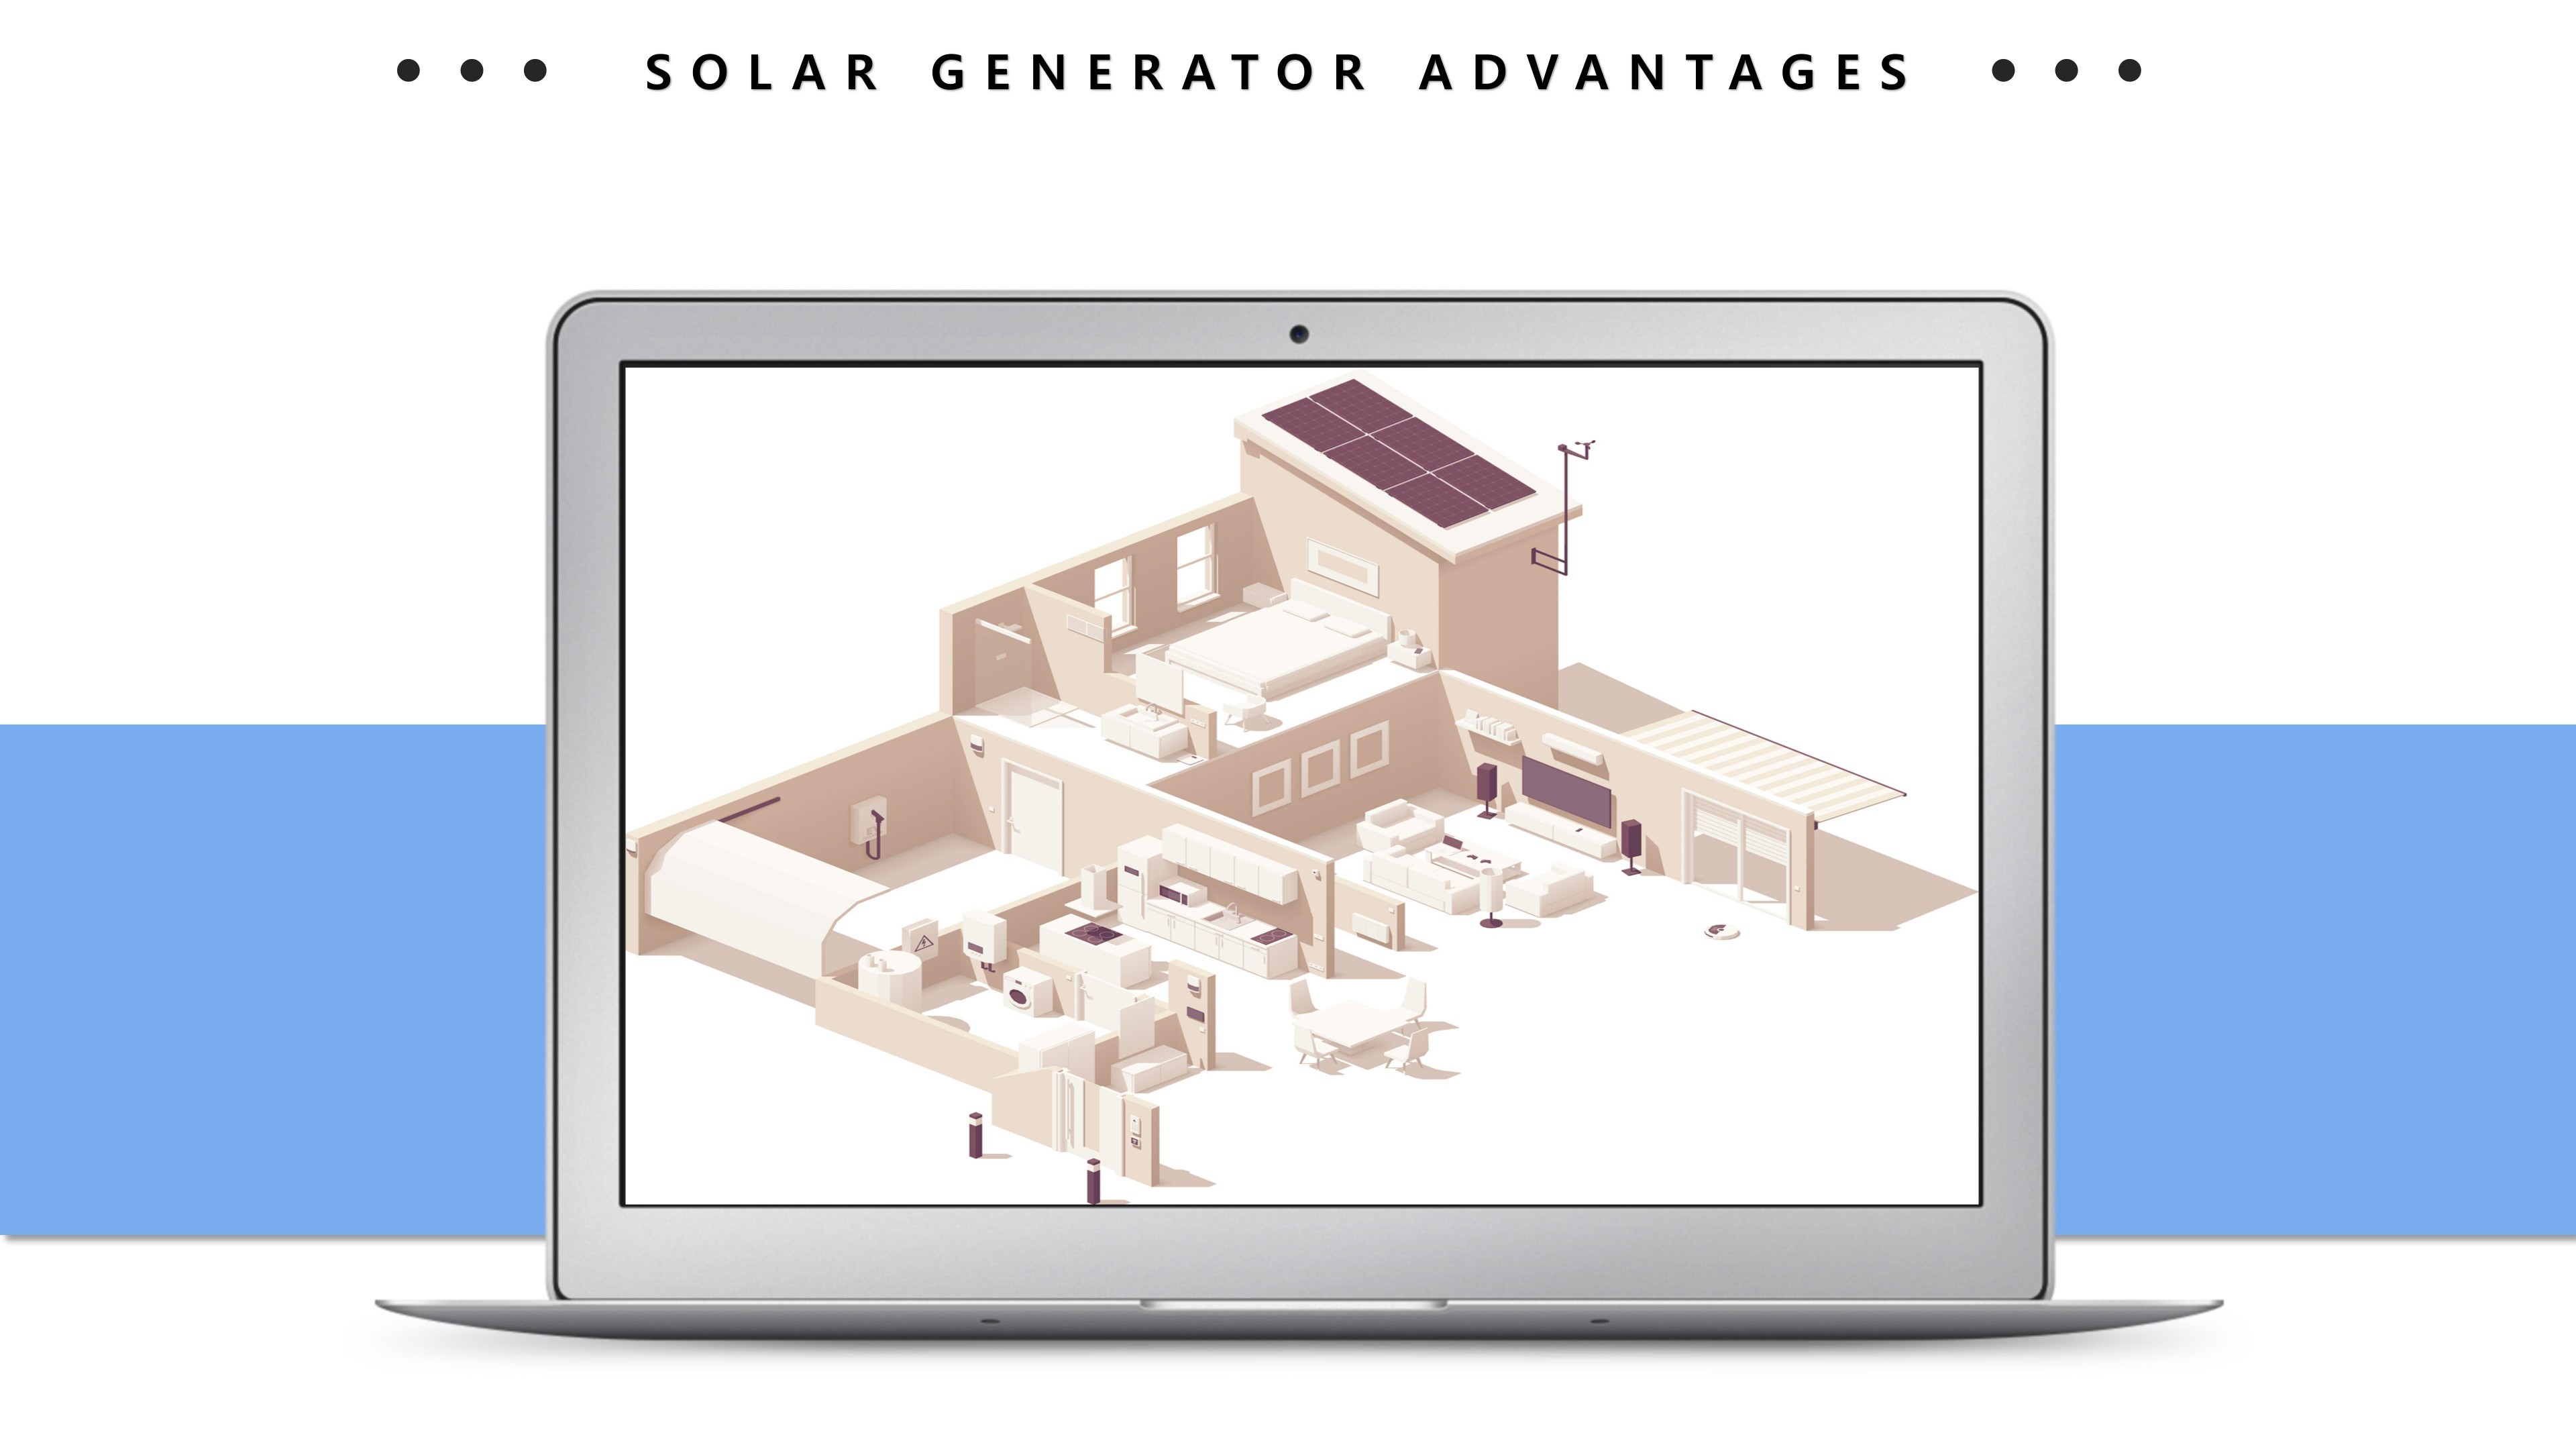 Solar generators advantages